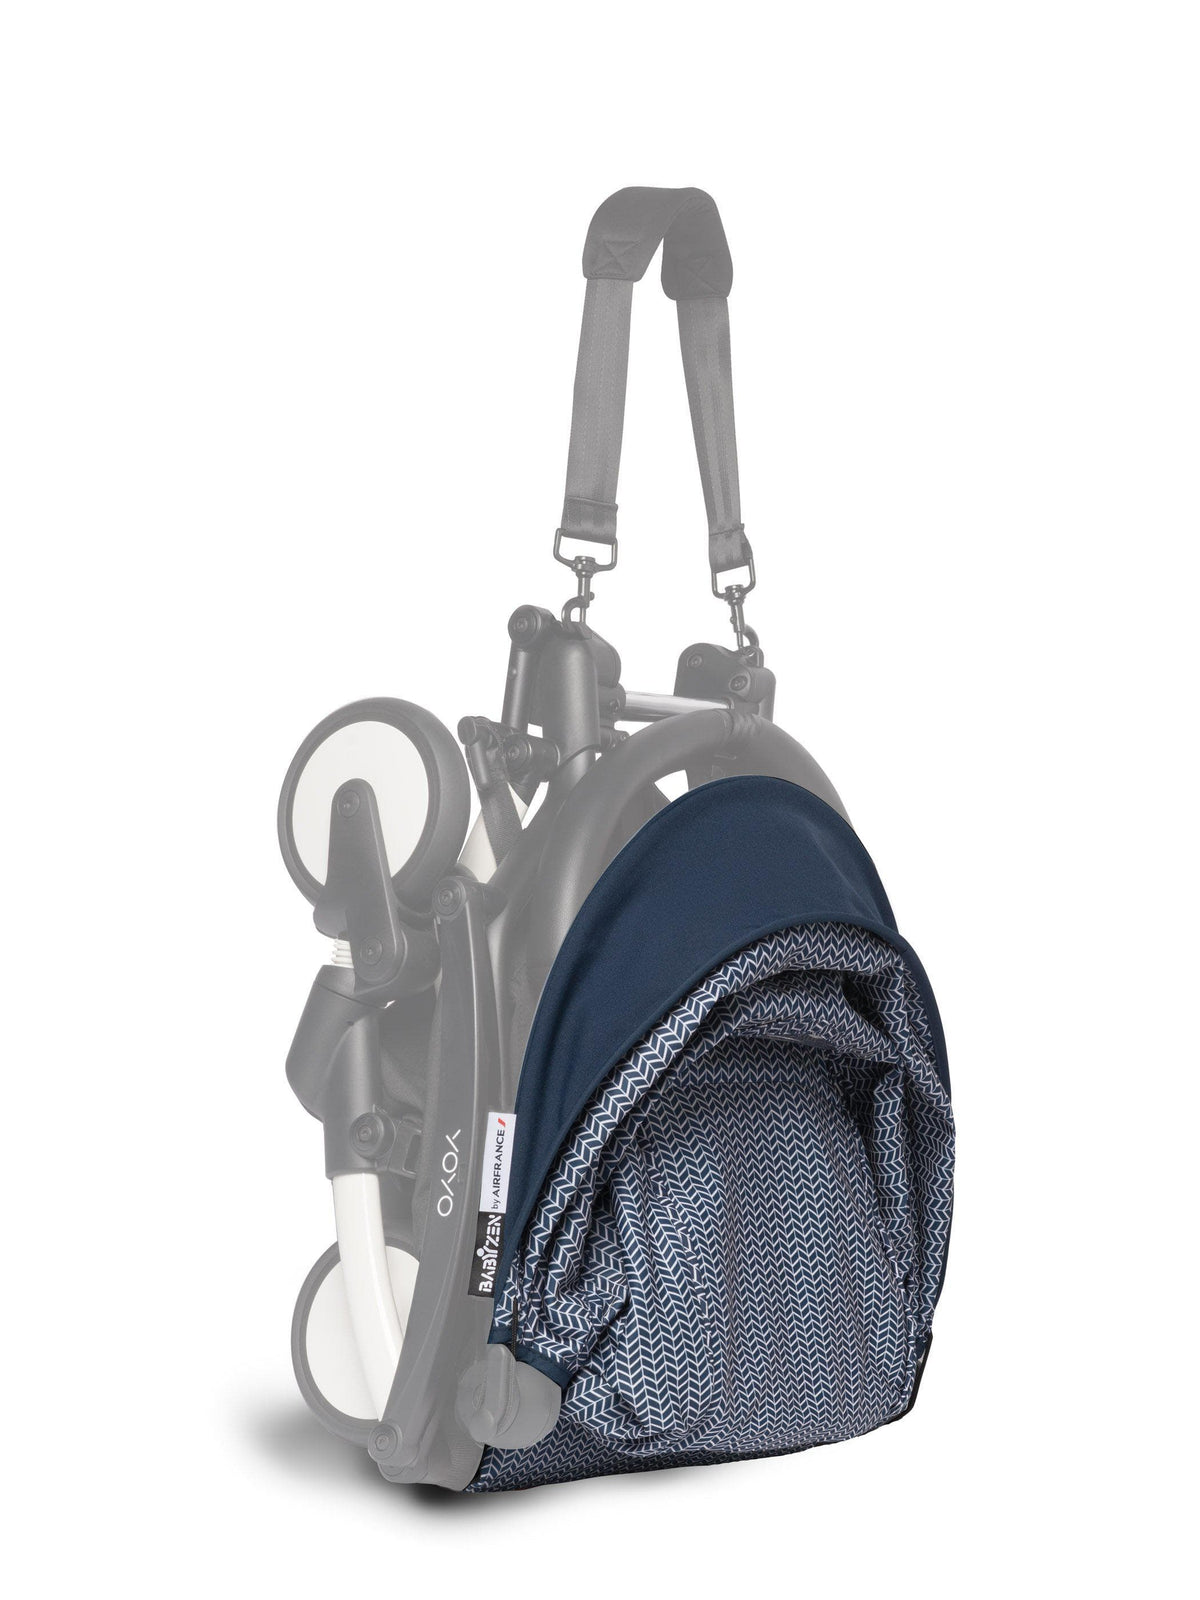 BABYZEN YOYO Bag - Bleu Marine - Accessoires poussette BABYZEN sur